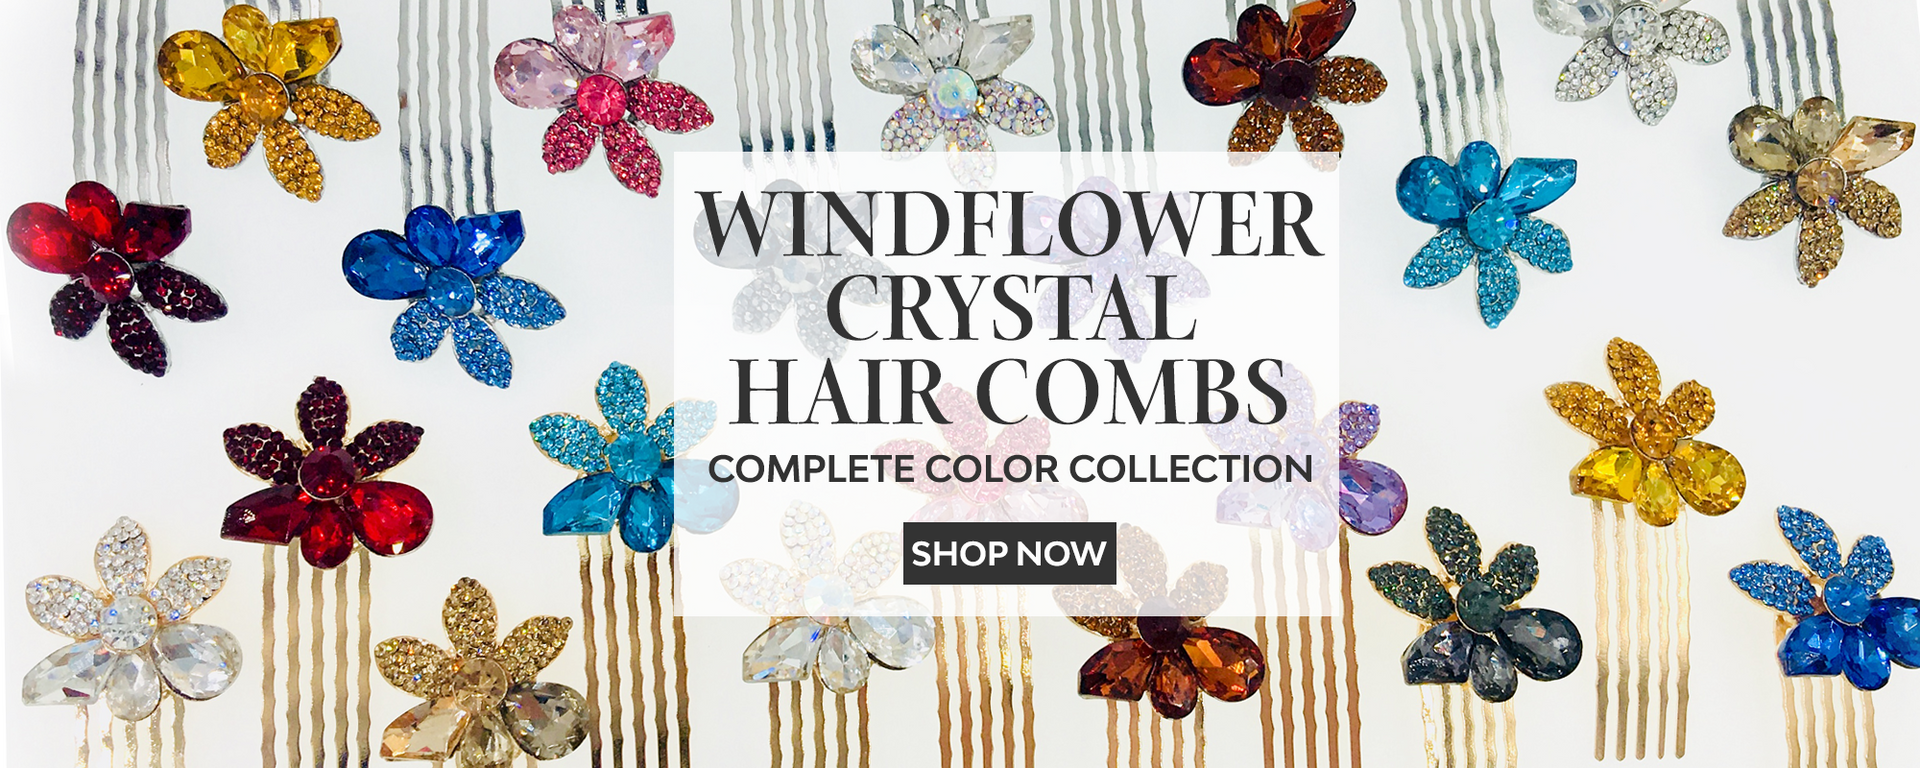 Moghant Windflower Crystal Hair Combs